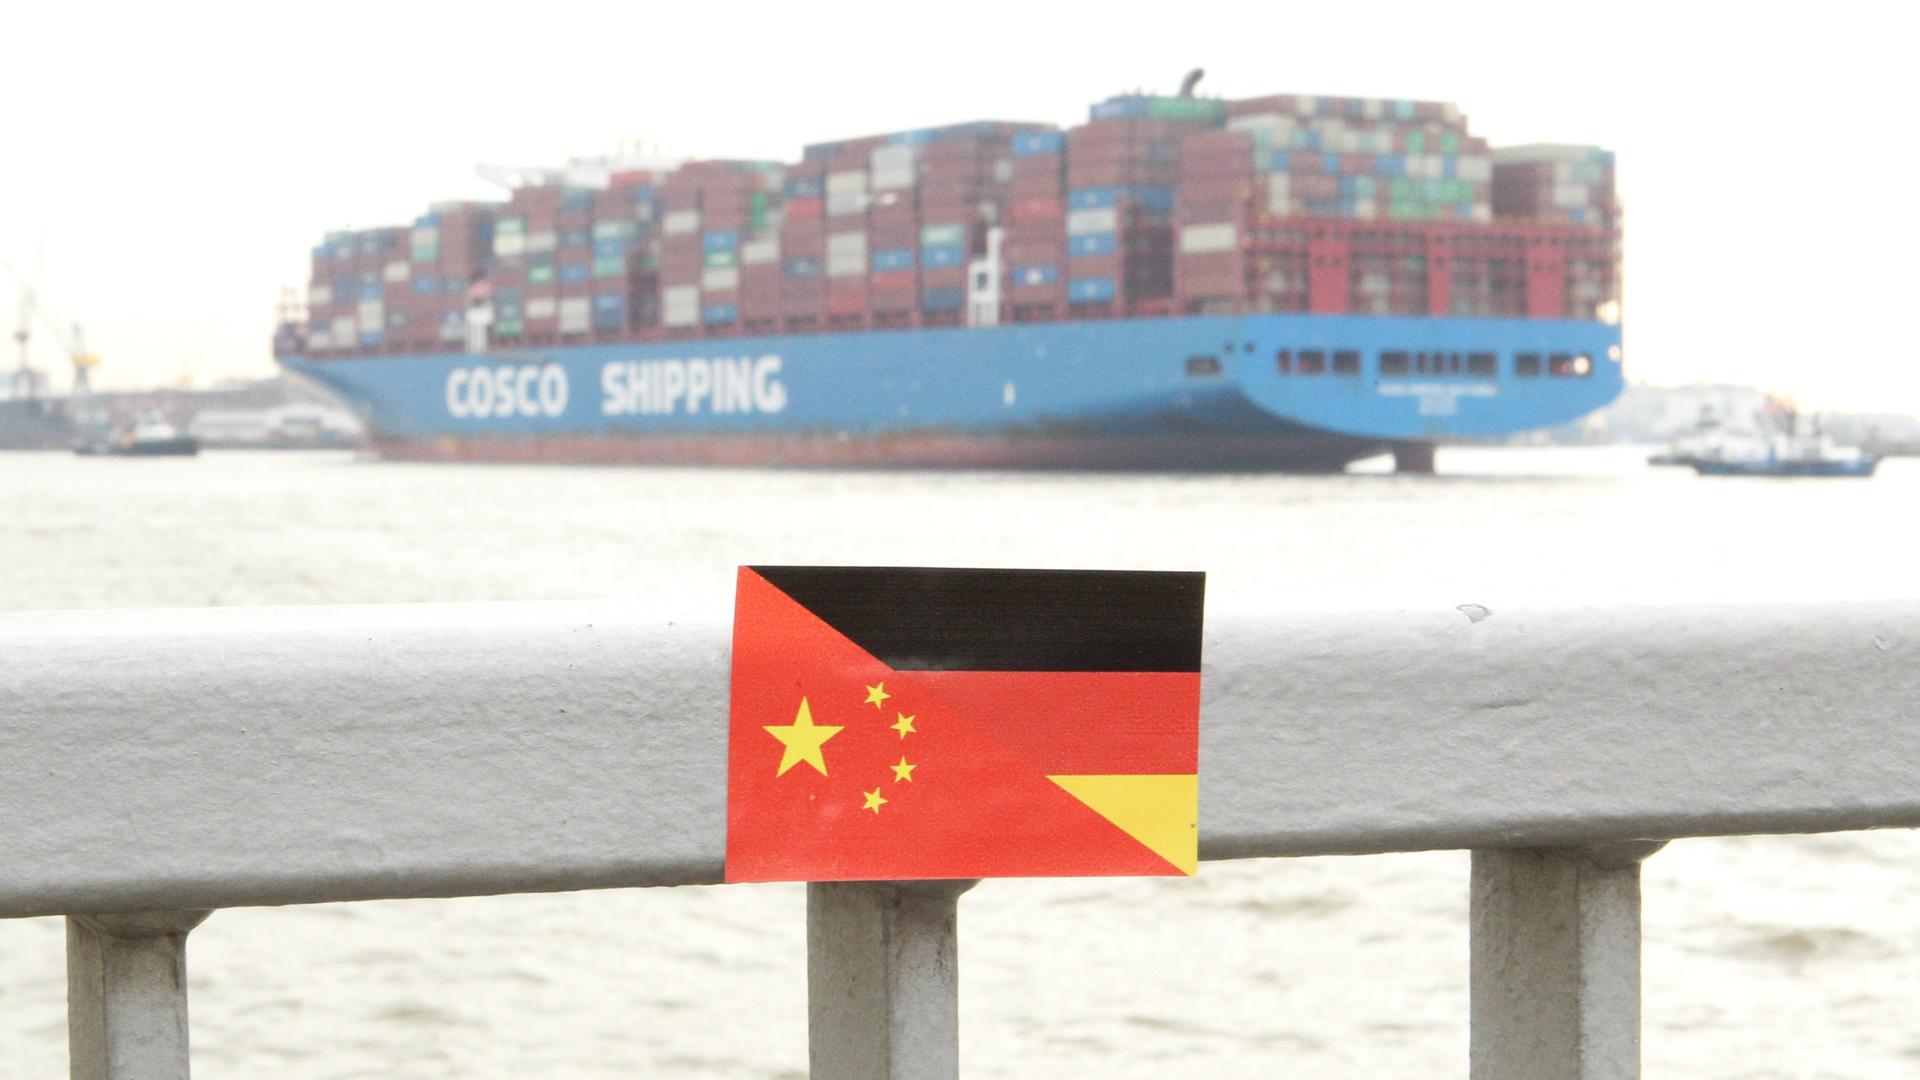 Ein Containerschiff vom chinesischen Schifffahrtsunternehmen Cosco im Hamburger Hafen.
